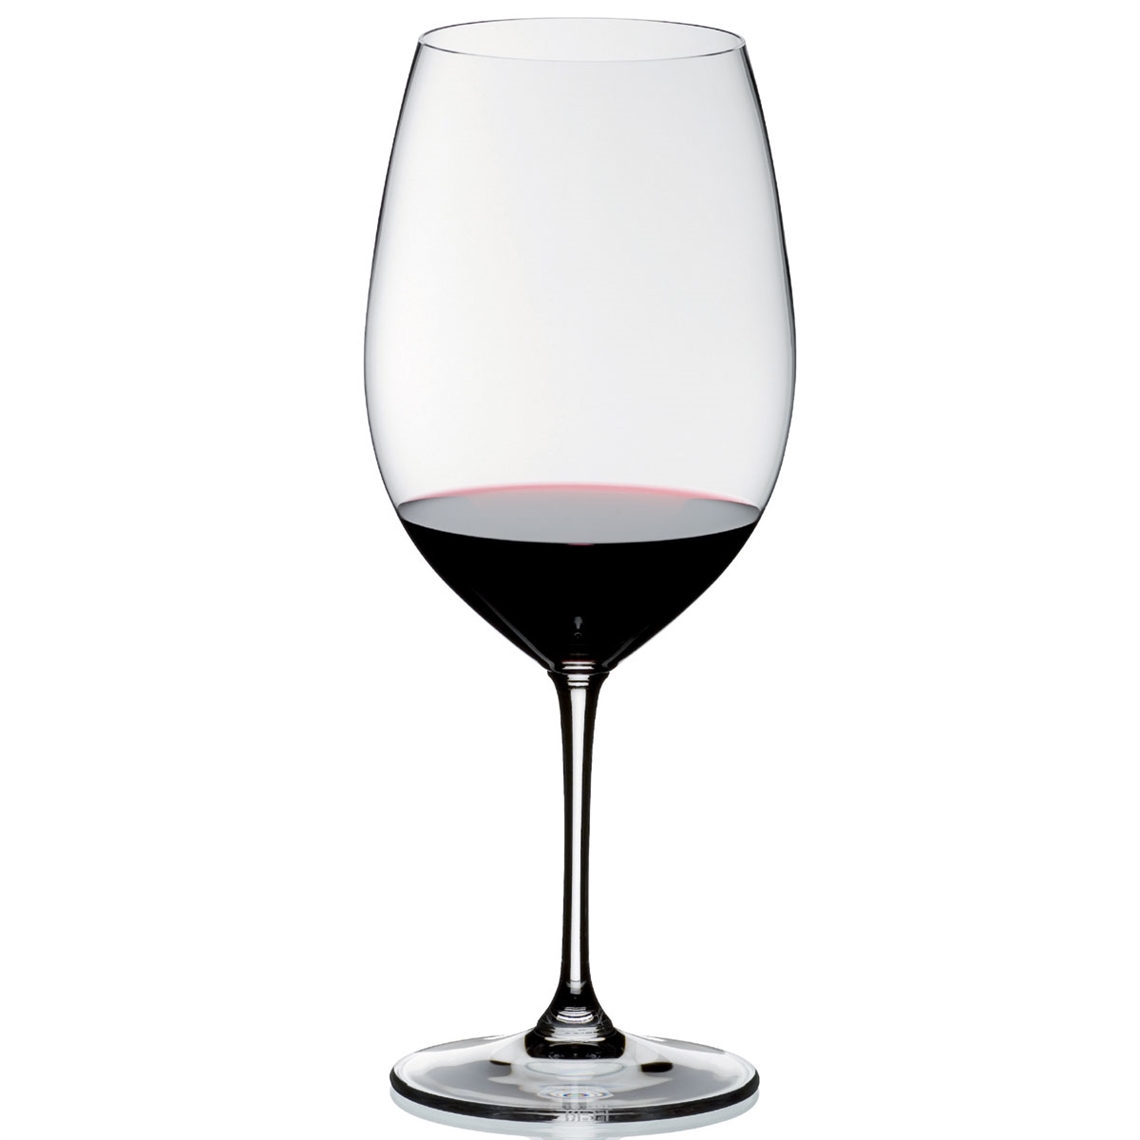 Riedel Vinum Bordeaux Grand Cru Glass - Pay 3 Get 4